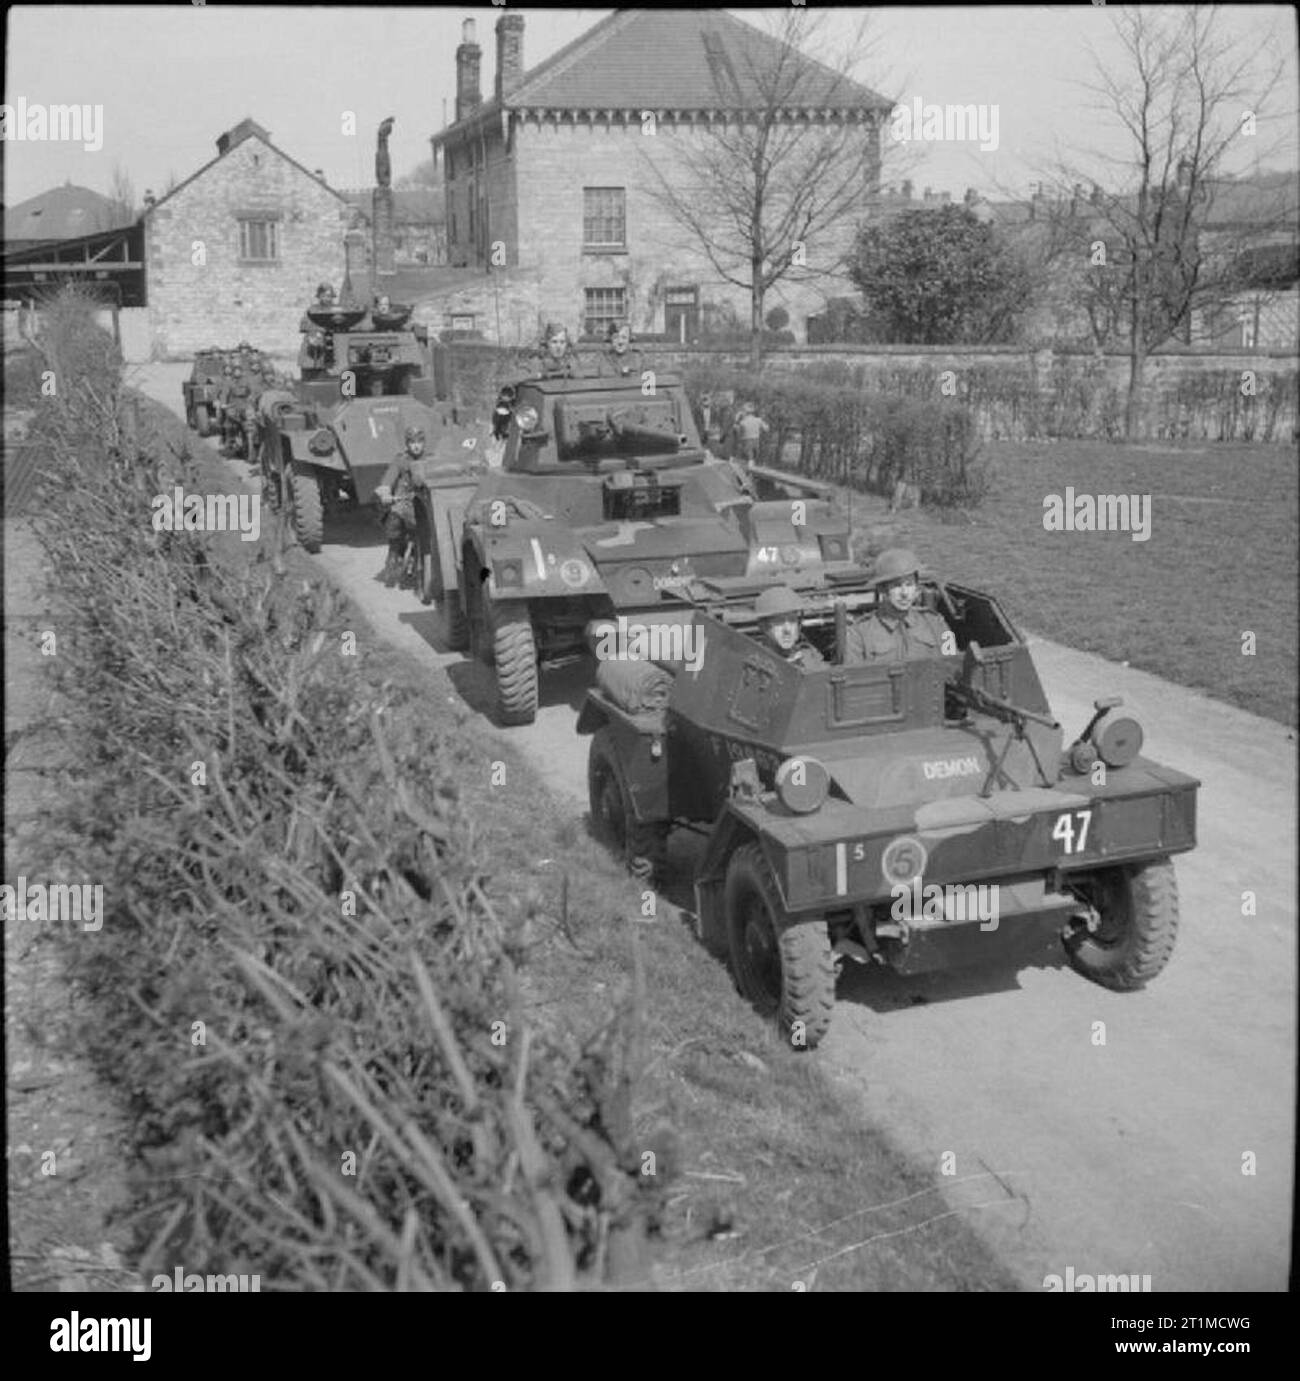 L'Armée britannique au Royaume-Uni 1939-45 autos blindées du 27e Lanciers, 11e Division blindée, 19 avril 1942. Un scout car conduit, suivi par Daimler et Humber véhicules blindés, avec plus de voitures scout tirant de l'arrière. Banque D'Images